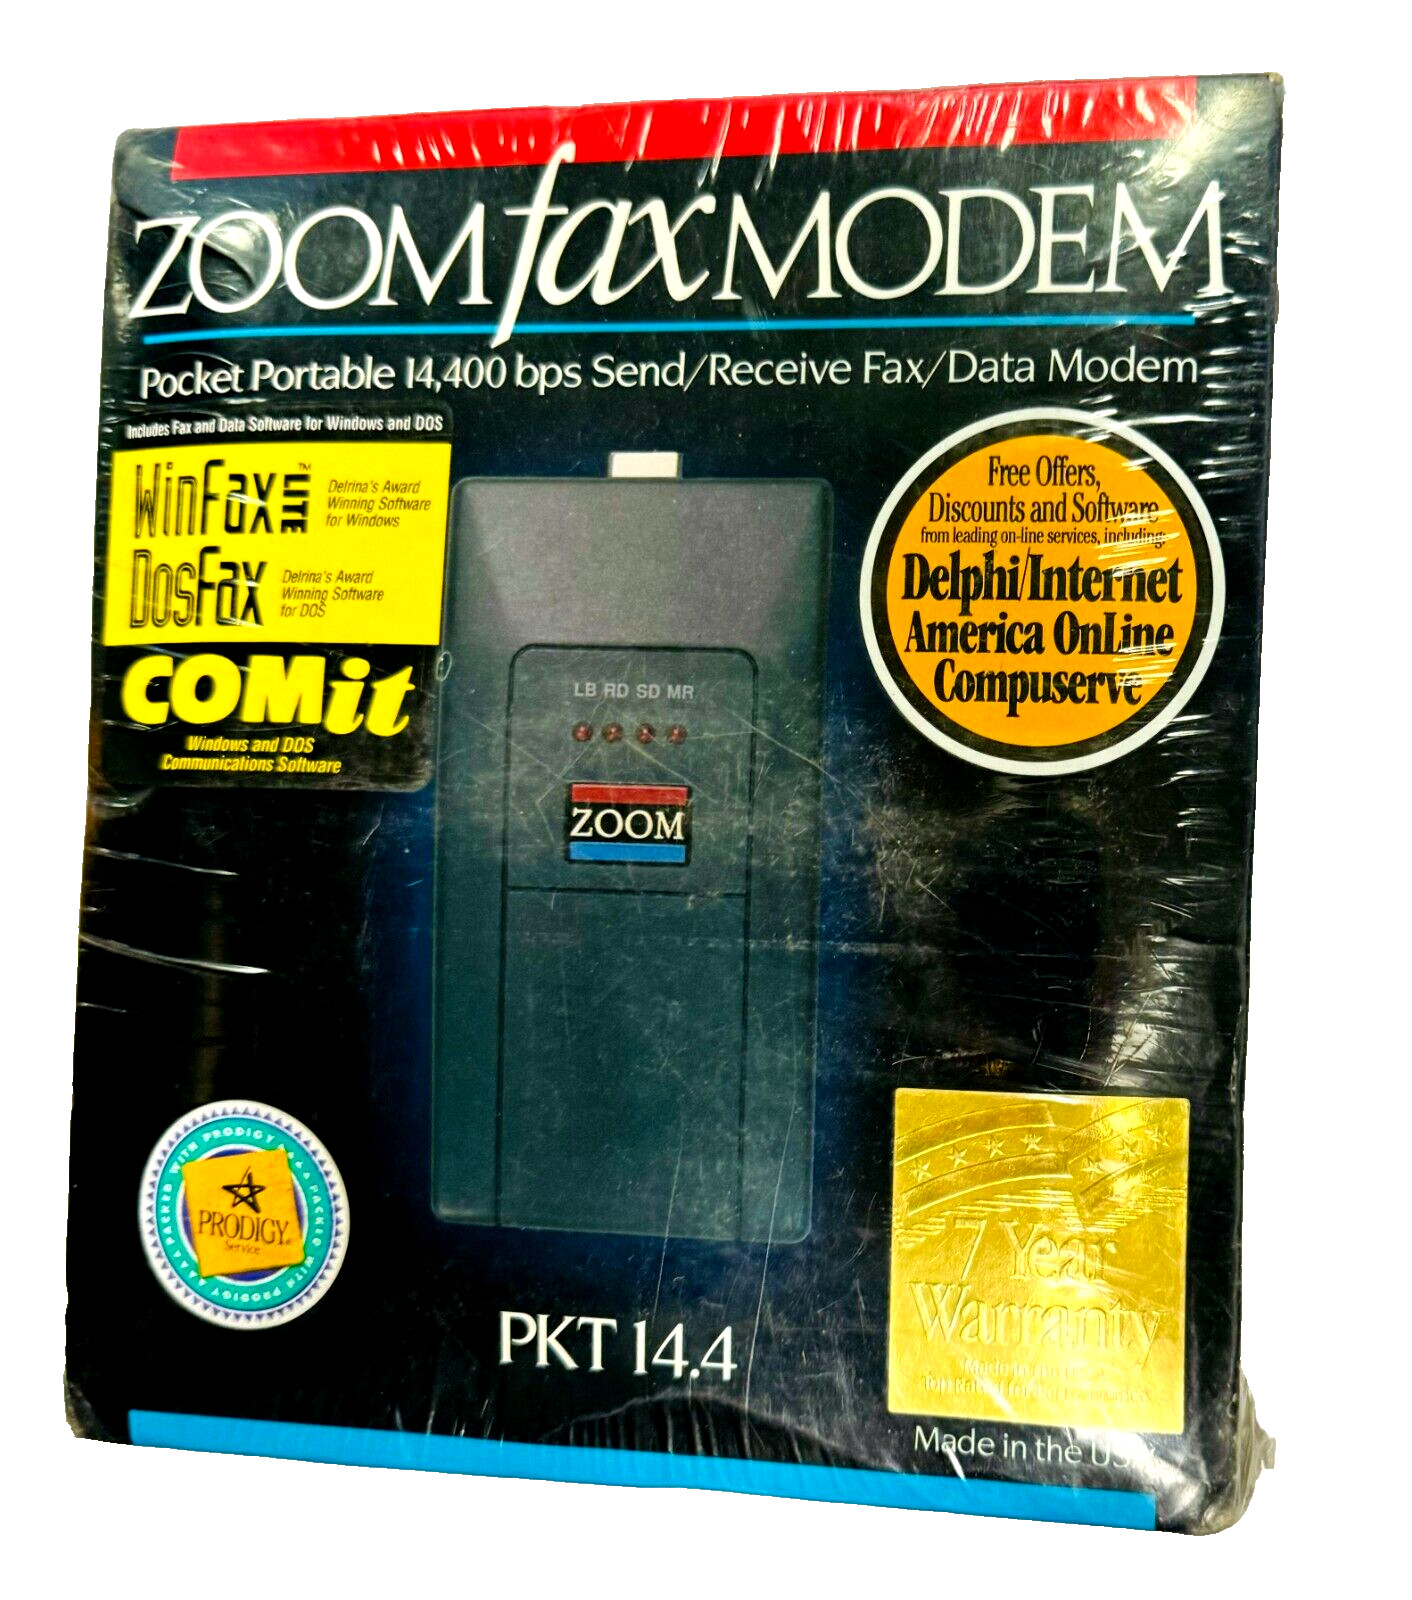 Vintage Zoom Fax Modem PKT 14.4 Model Pocket Portable - NEW SEALED